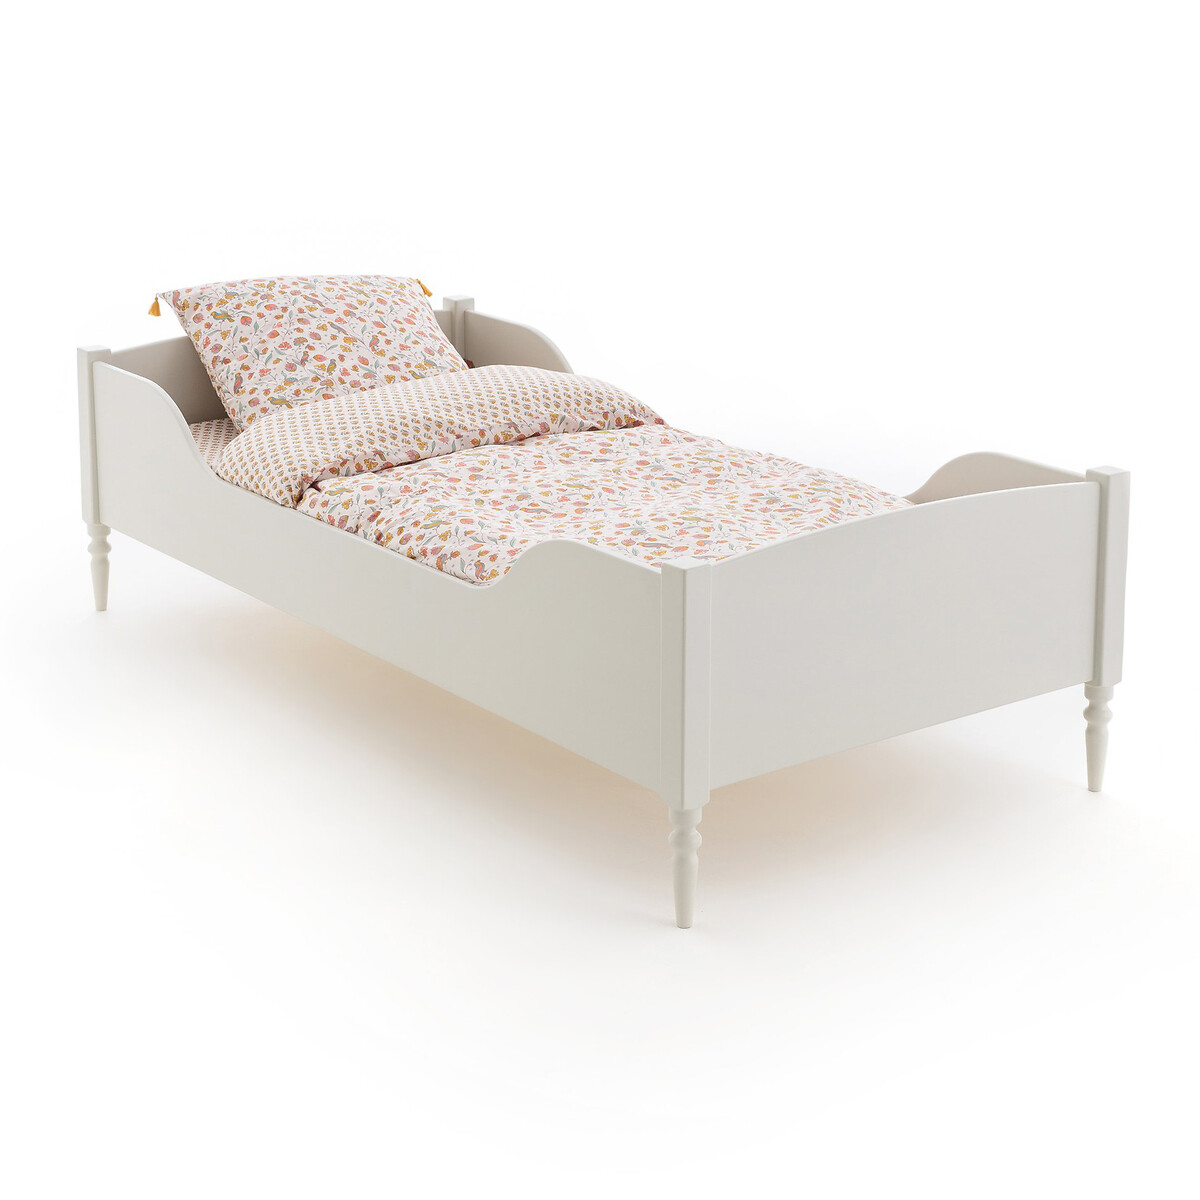 кровать детская из ротанга albin 90 x 190 см бежевый Кровать детская с сеткой CLA 90 x 190 см бежевый